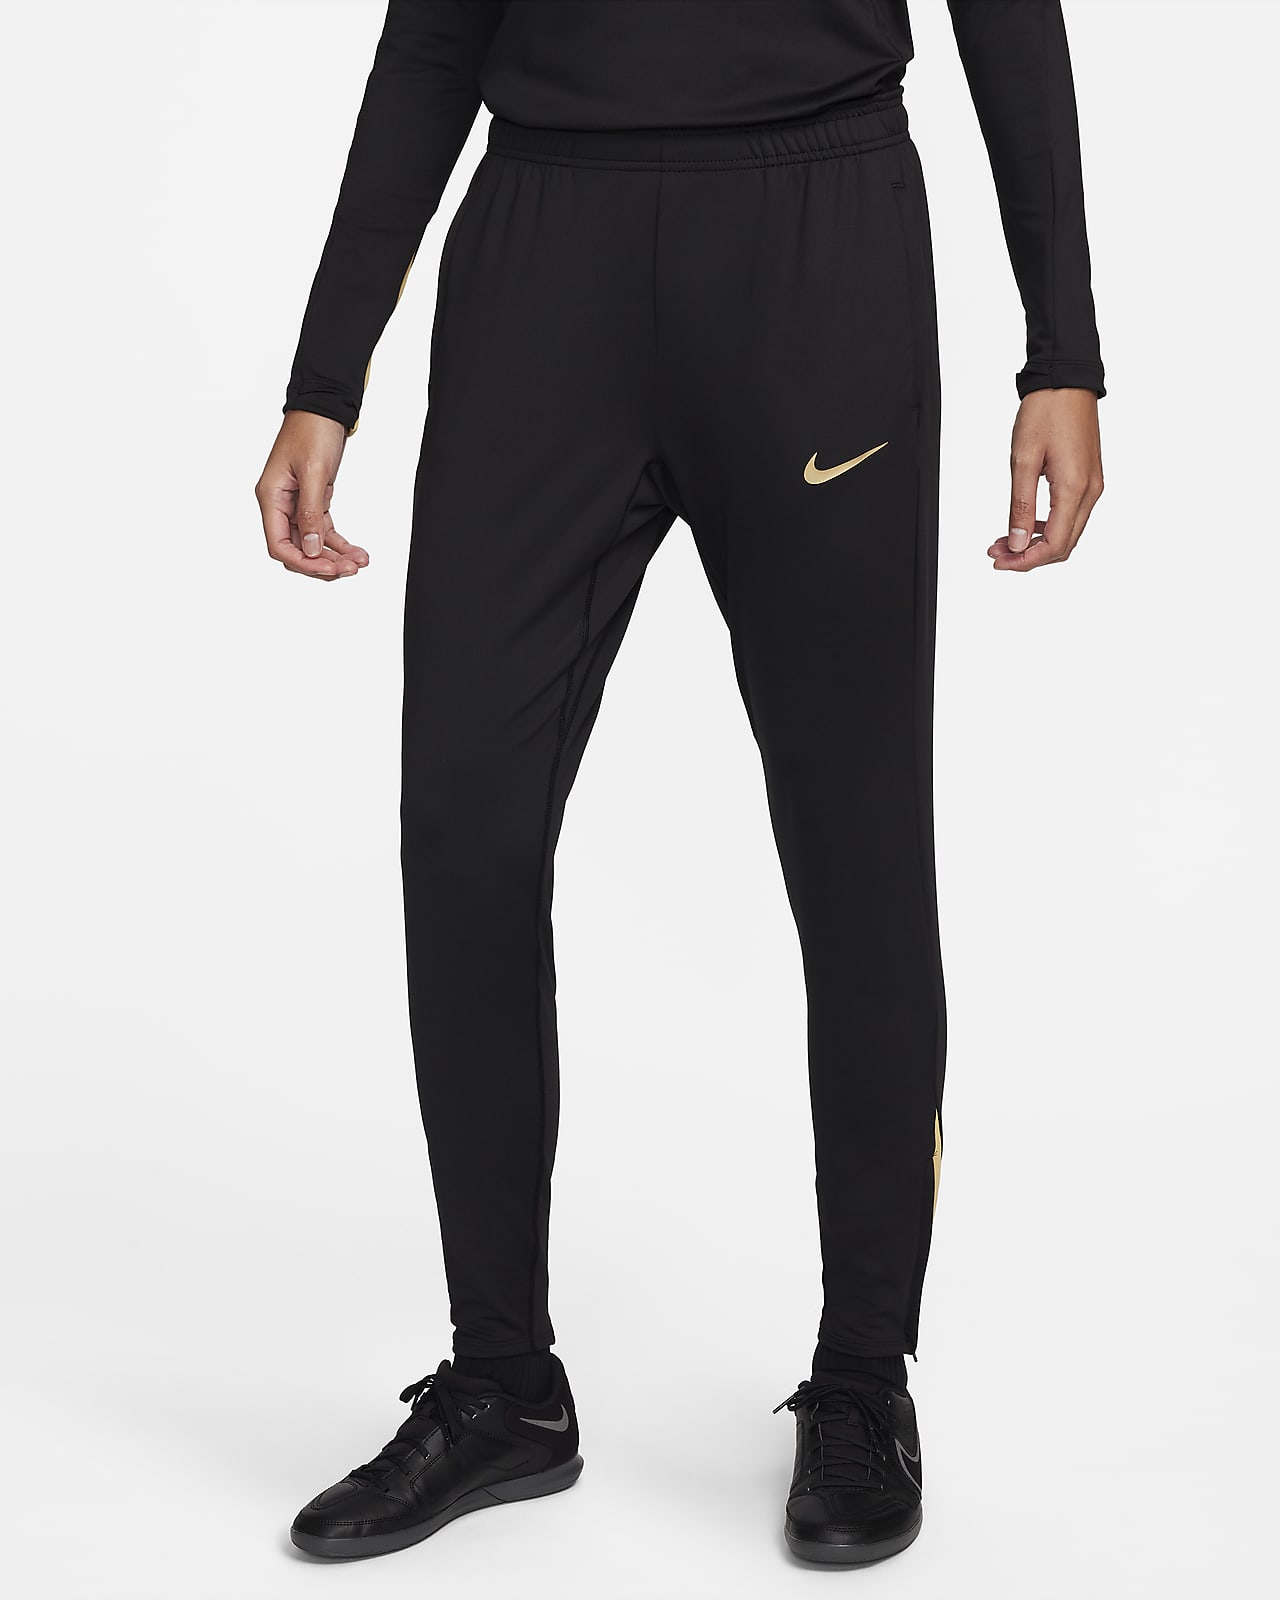 Dámské fotbalové kalhoty Dri-FIT Nike Strike